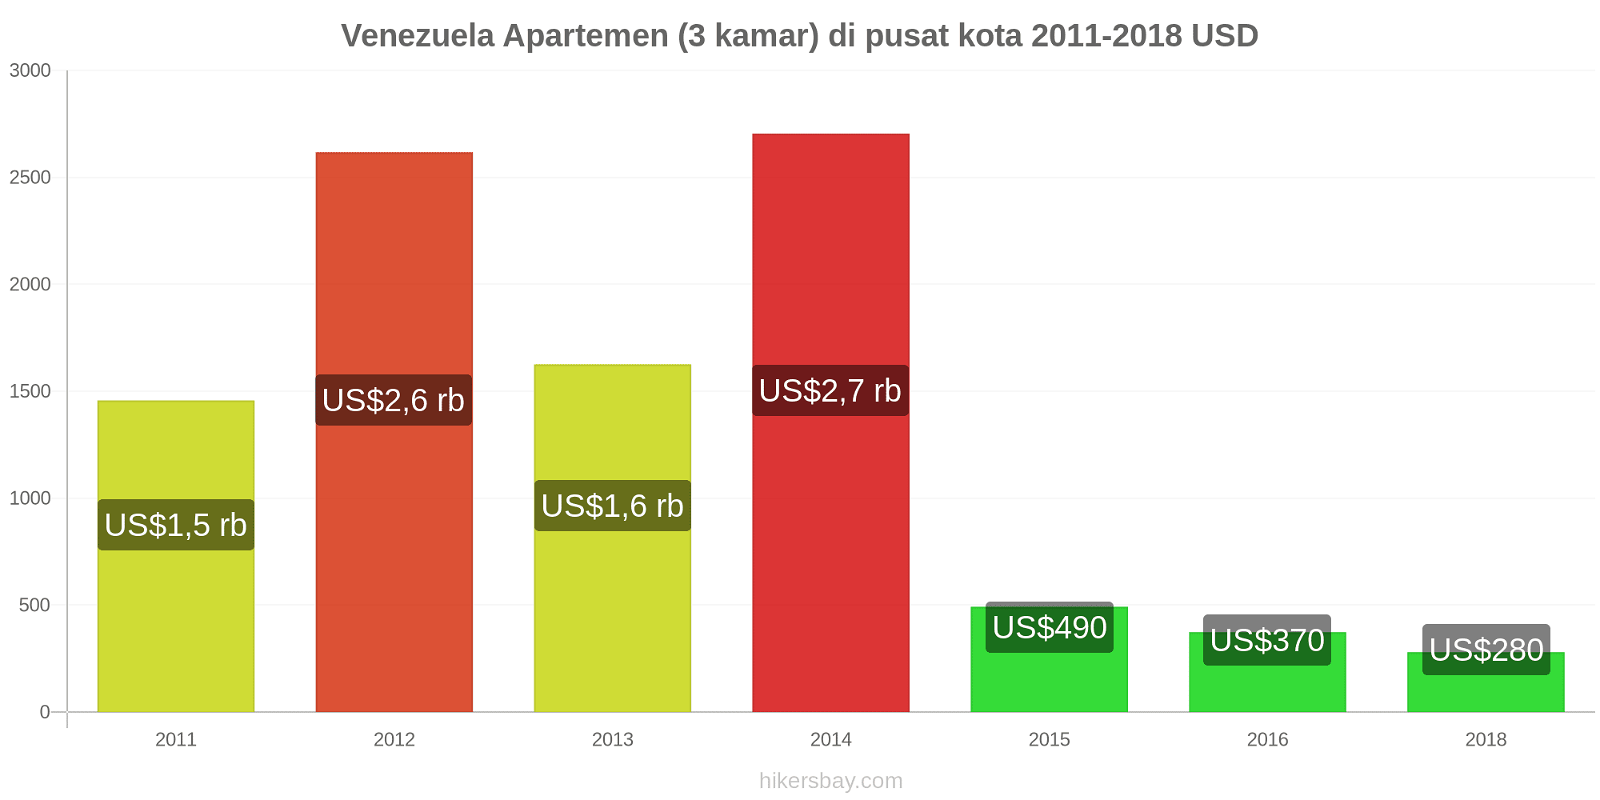 Venezuela perubahan harga Apartemen (3 kamar) di pusat kota hikersbay.com